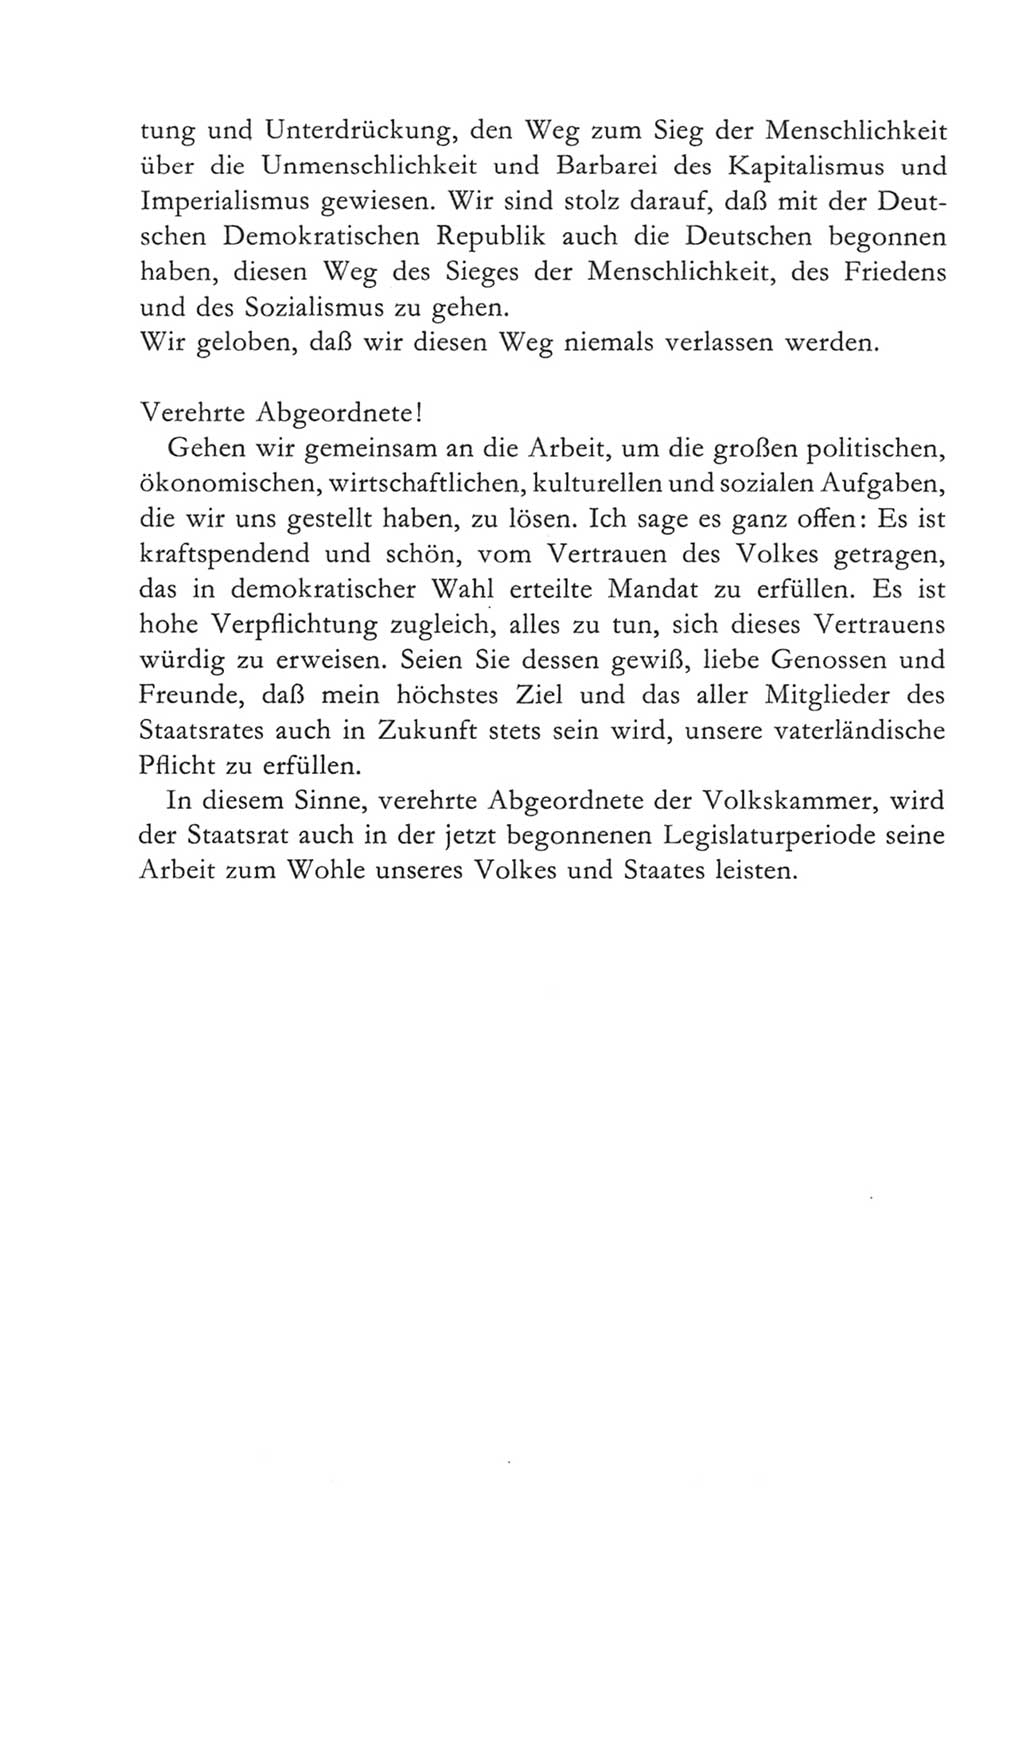 Volkskammer (VK) der Deutschen Demokratischen Republik (DDR) 5. Wahlperiode 1967-1971, Seite 154 (VK. DDR 5. WP. 1967-1971, S. 154)